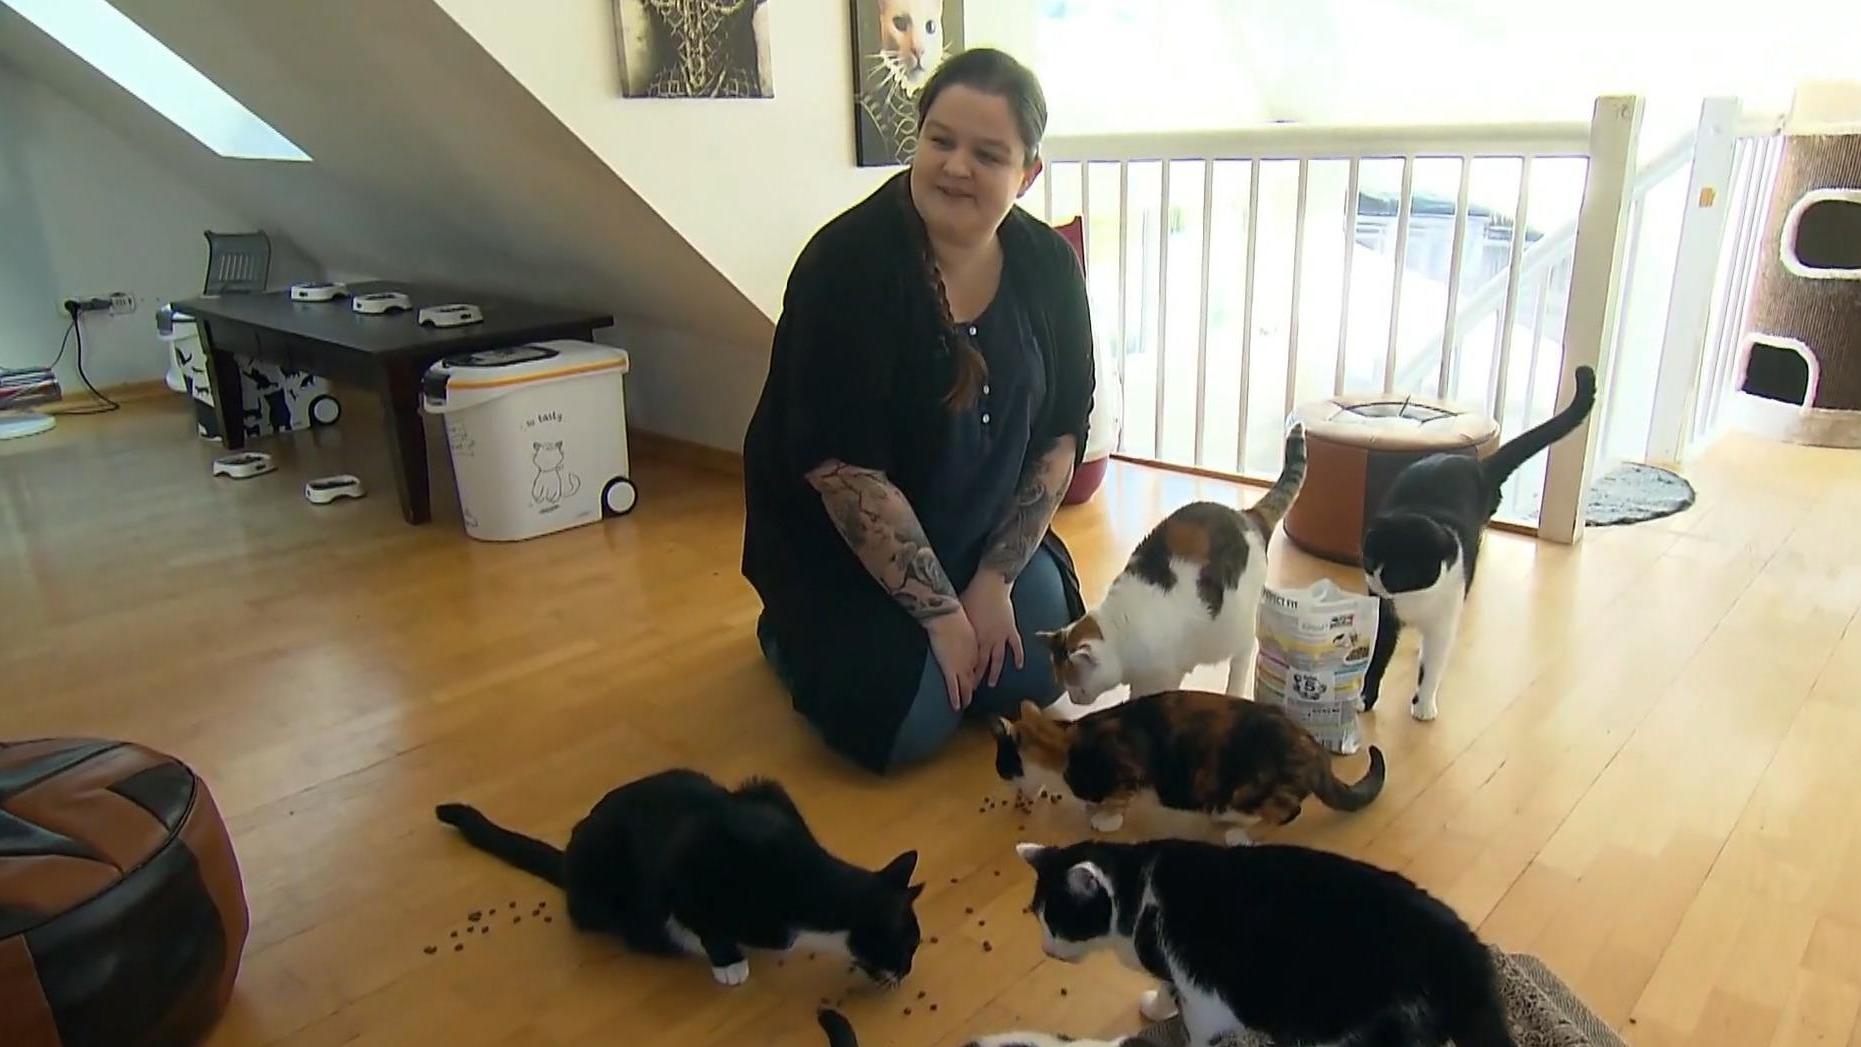 "Wer wird Millionär?"-Kandidatin Annika Joffel hat 15 ursprünglichen "unvermittelbaren" Katzen aus dem Tierheim ein neues glückliches Zuhause gegeben